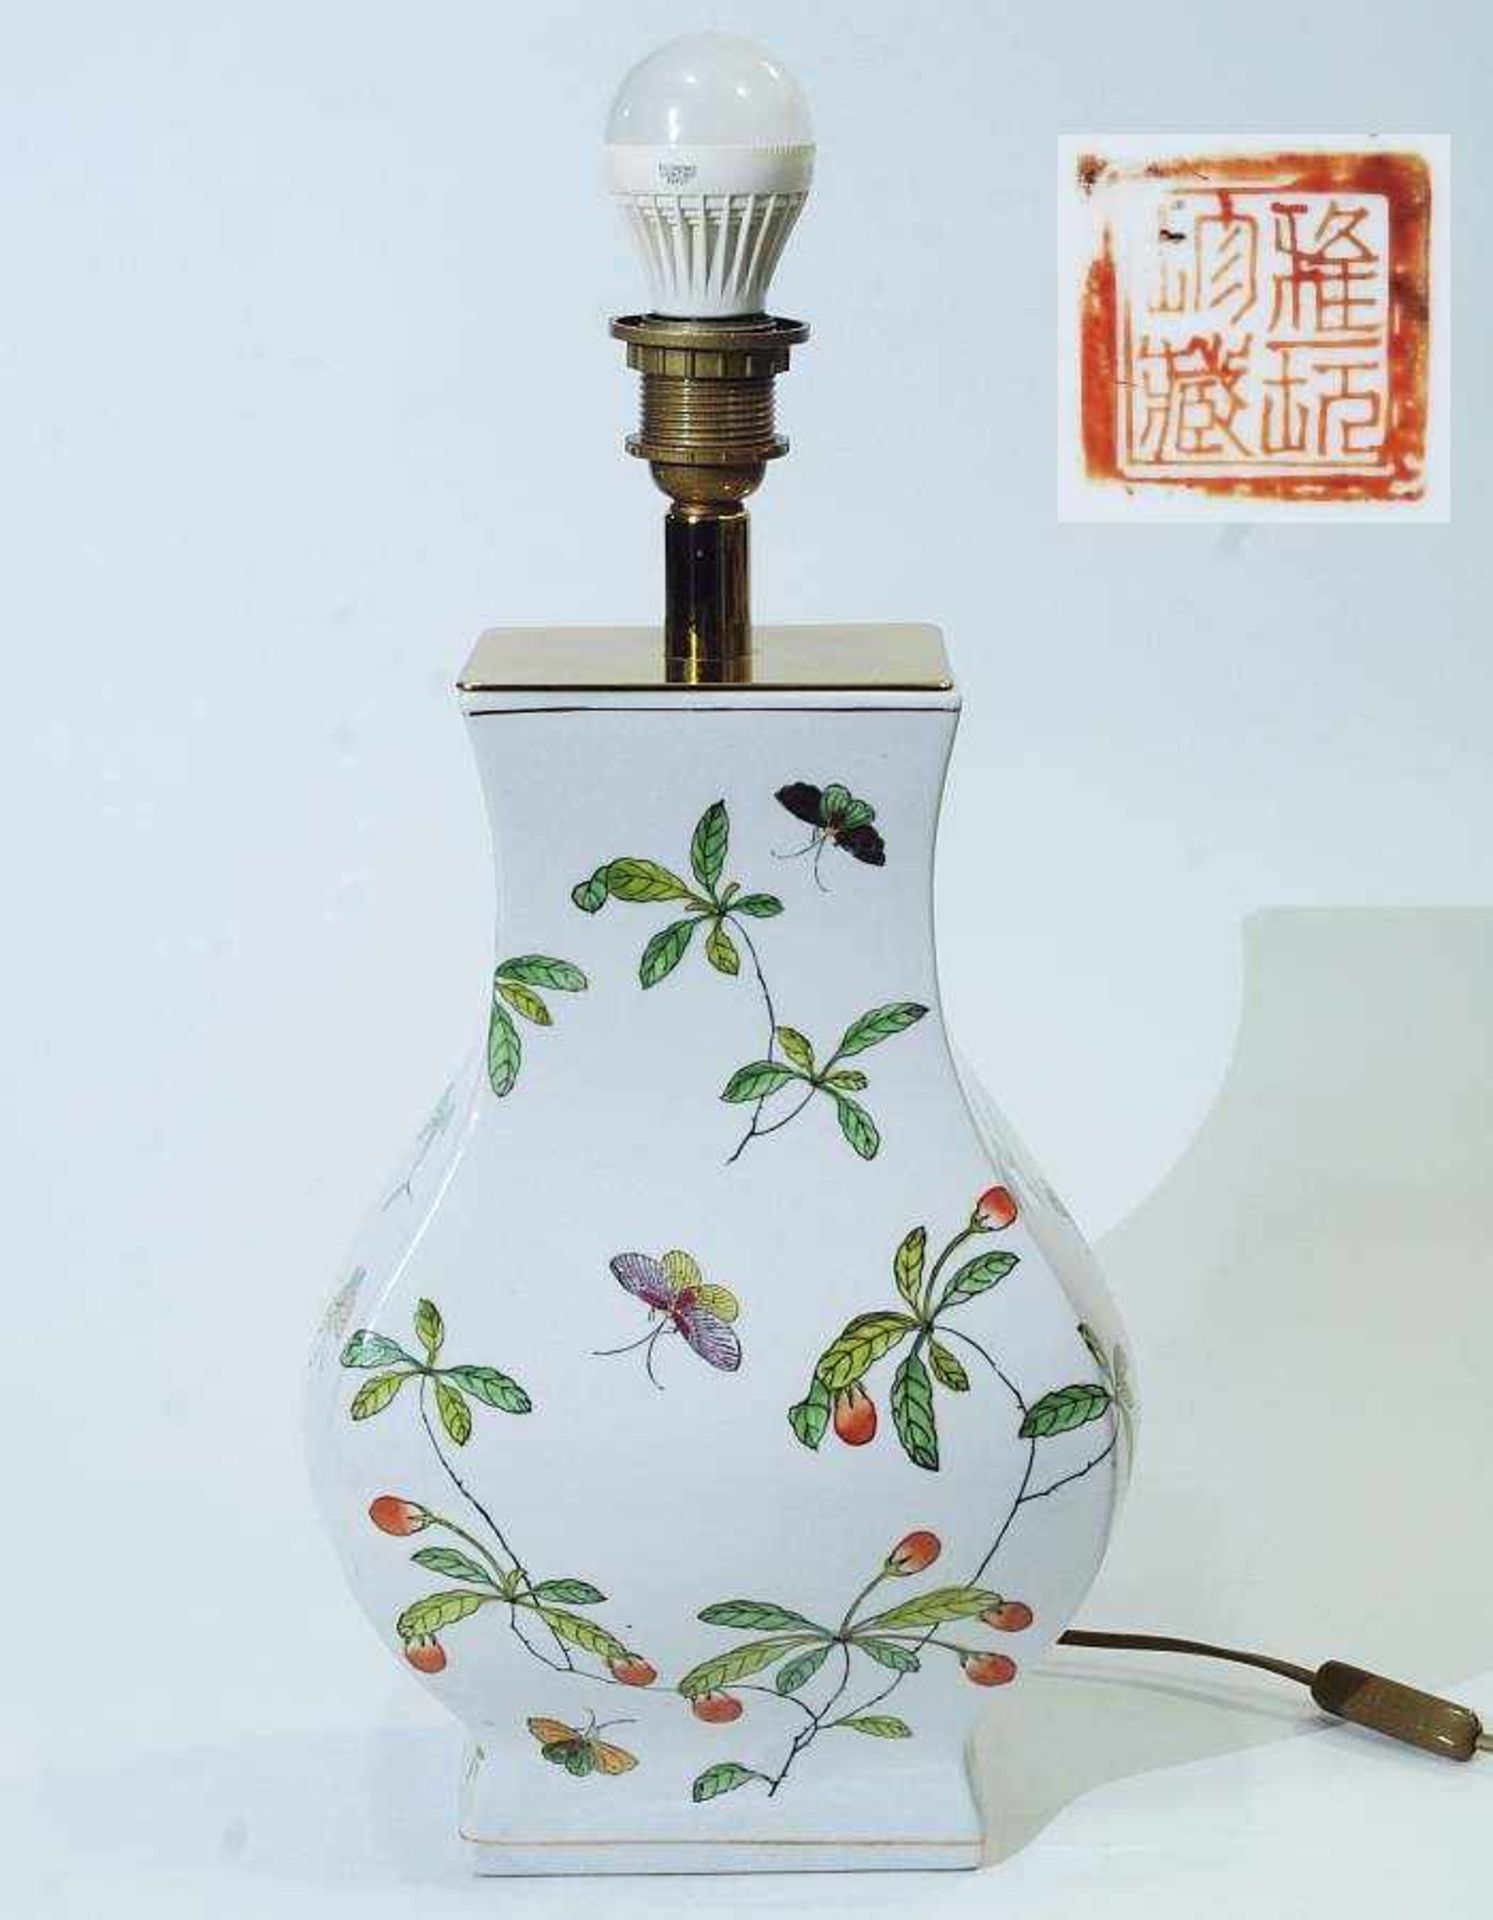 Lampenfuß. Lampenfuß. Asien, 20. Jahrhundert. Porzellan, buntfarbige Darstellung von Fruchtzweigen